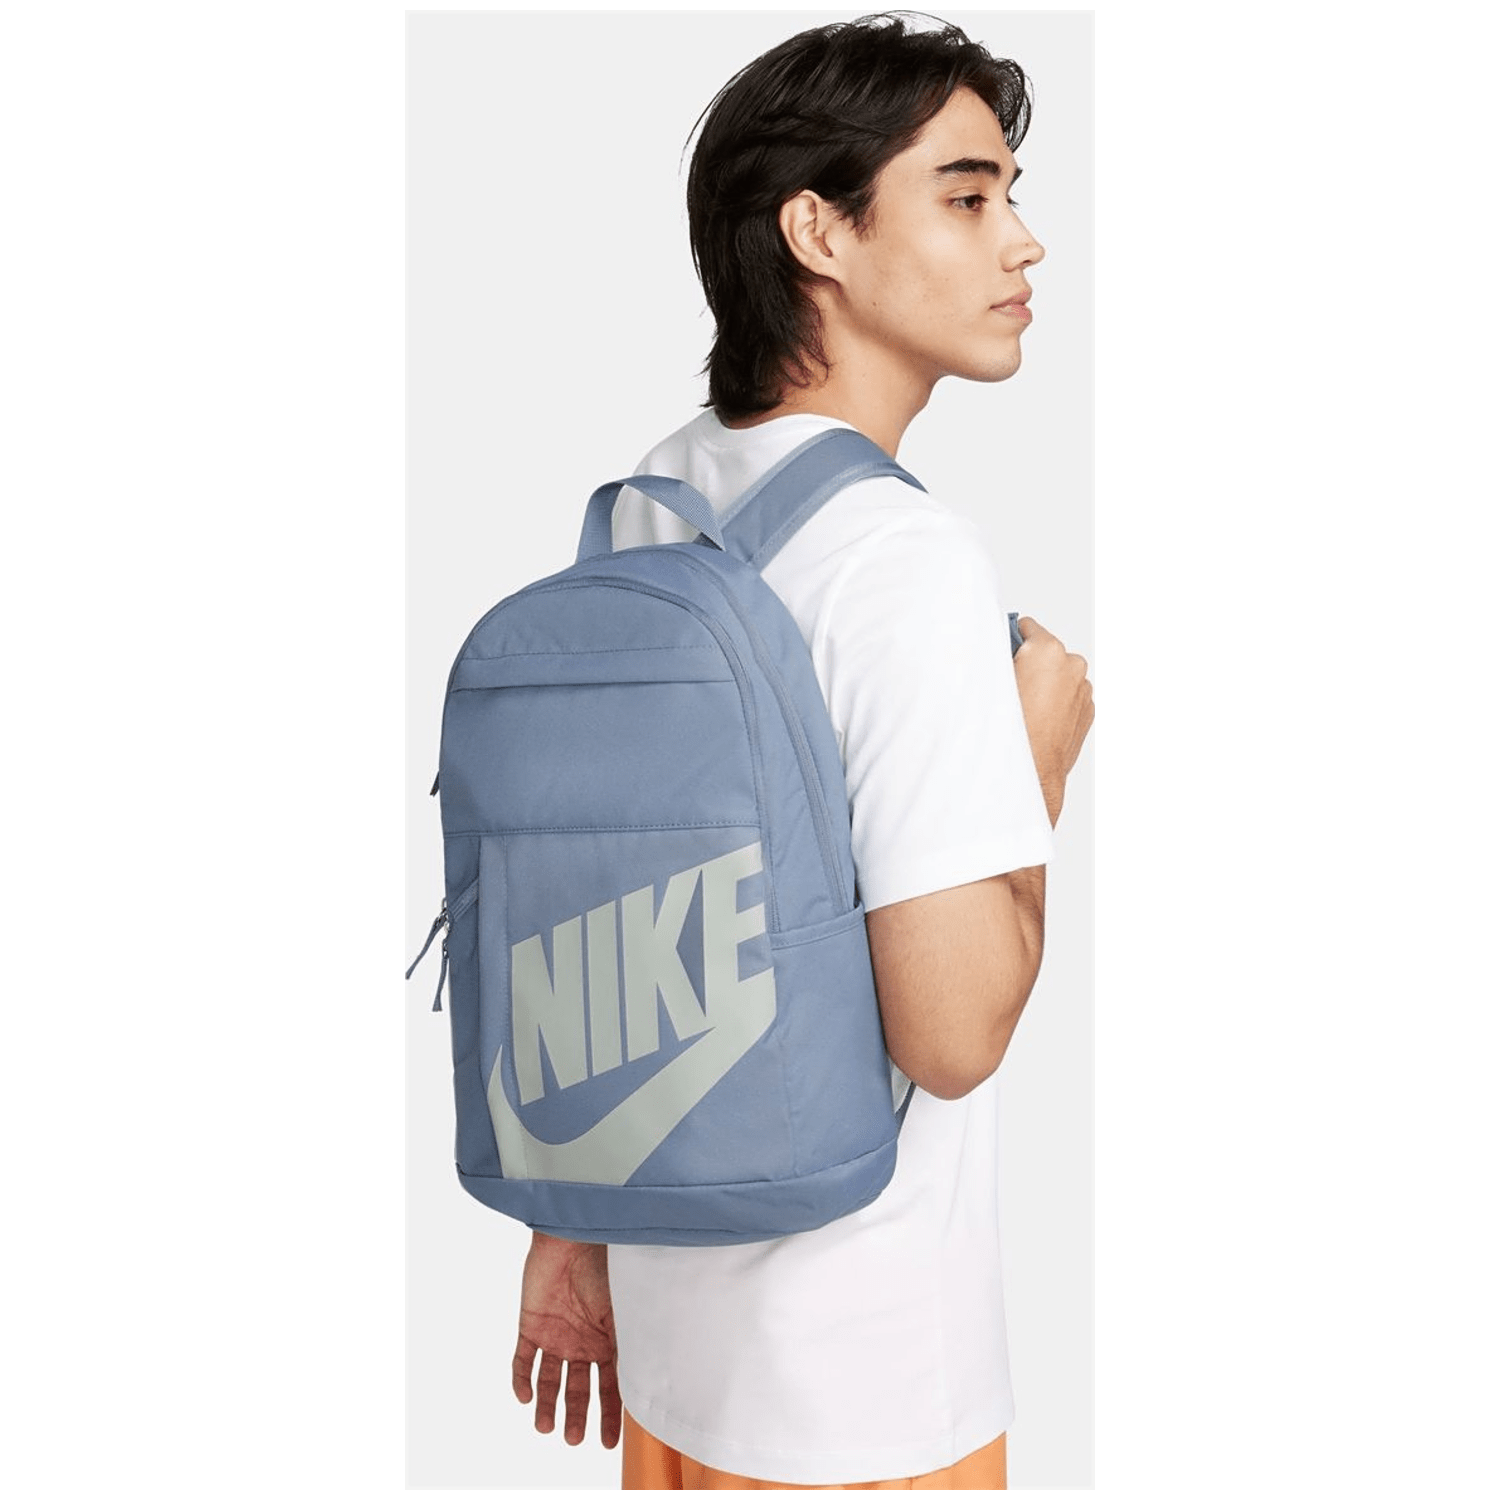 Nike Elemental Unisex Daybag